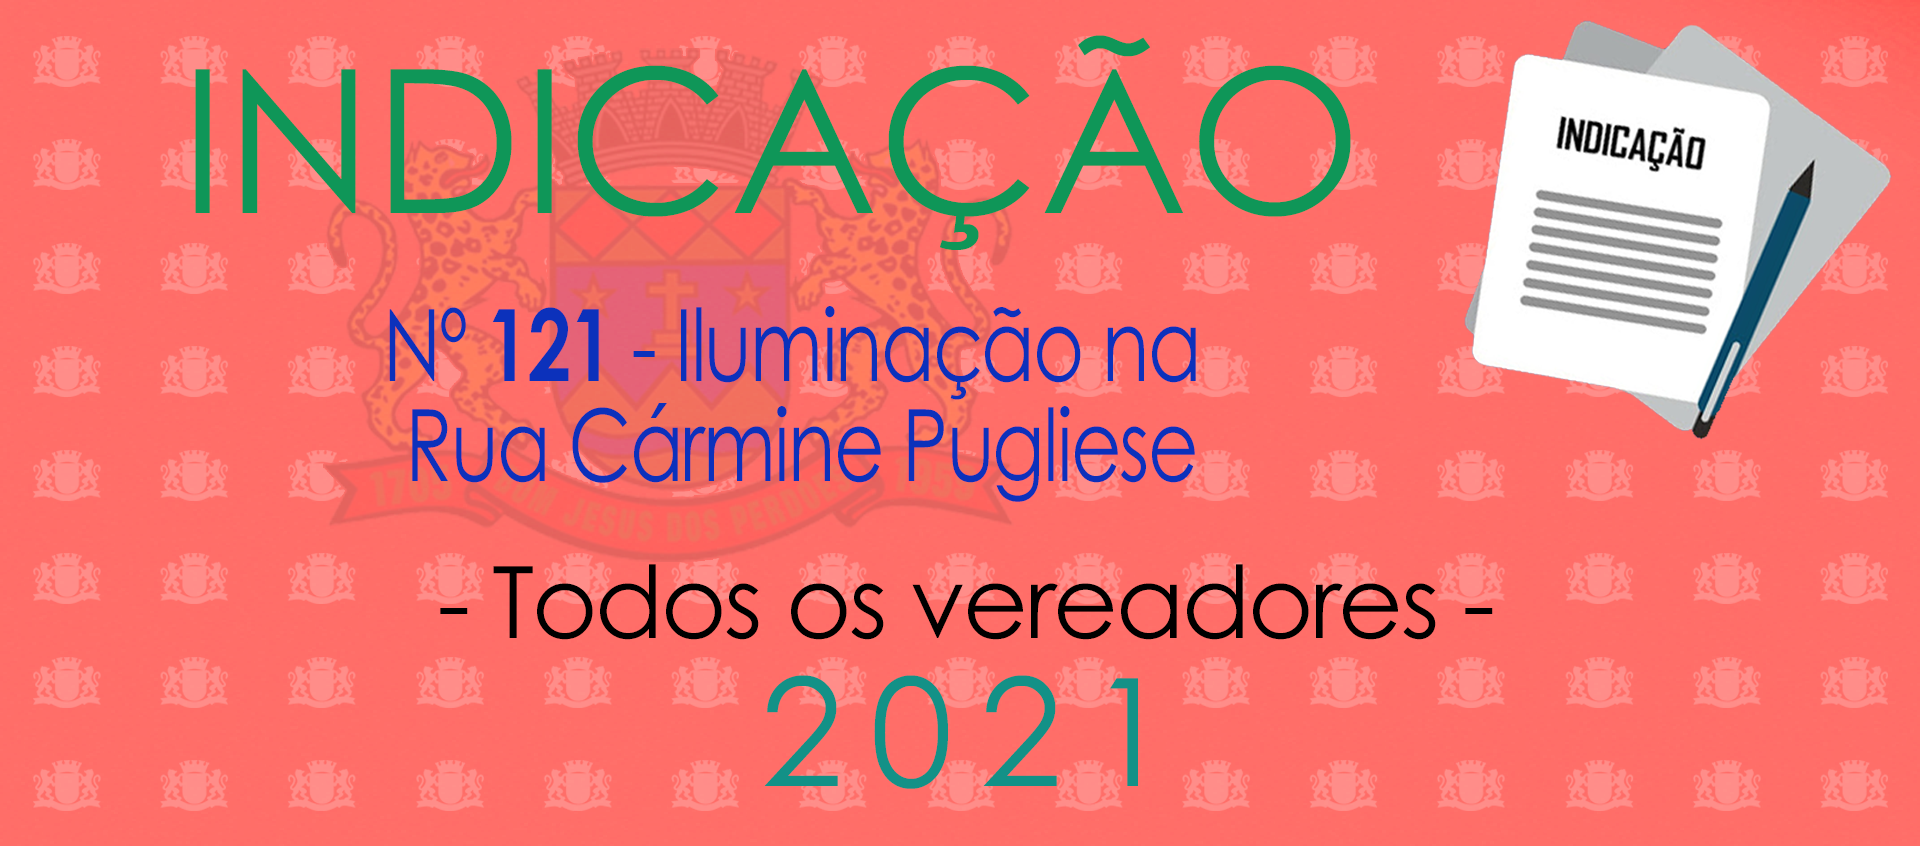 Indicação 121-2021 - Illuminação na Cármine Pugliese - Todos